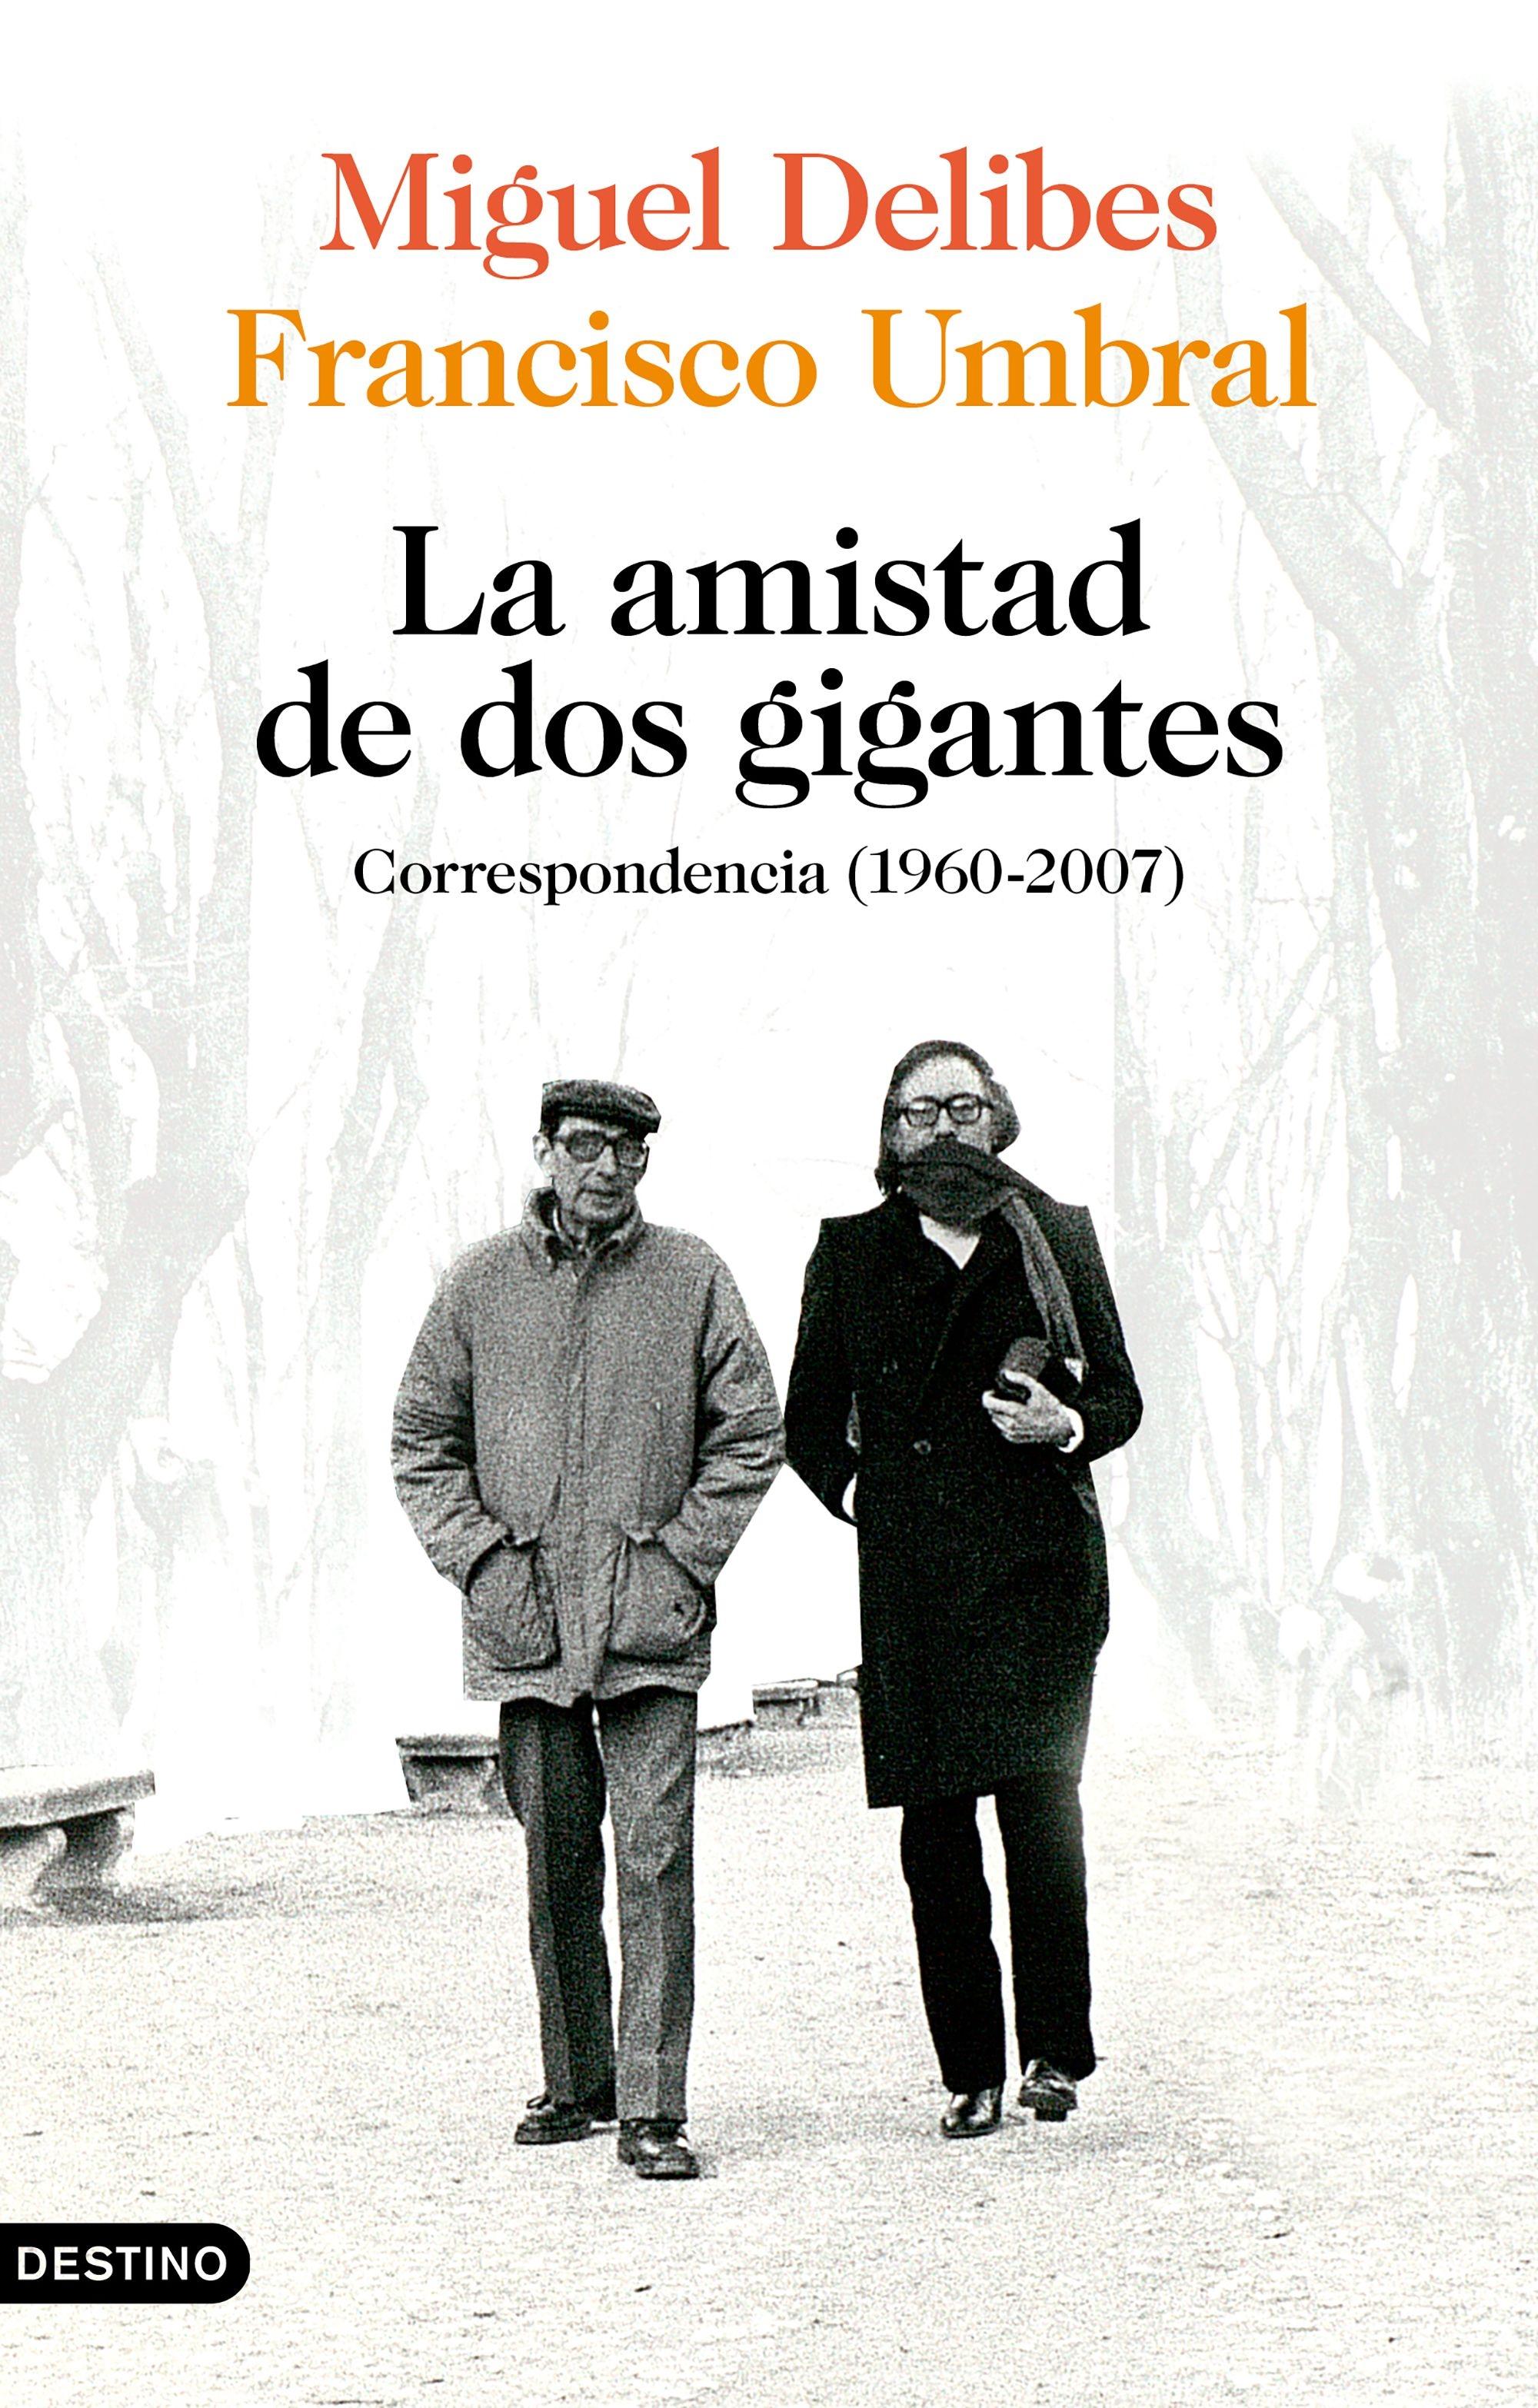 La amistad de dos gigantes, Miguel Delibes y Francisco Umbral "Correspondencia (1960-2007)"